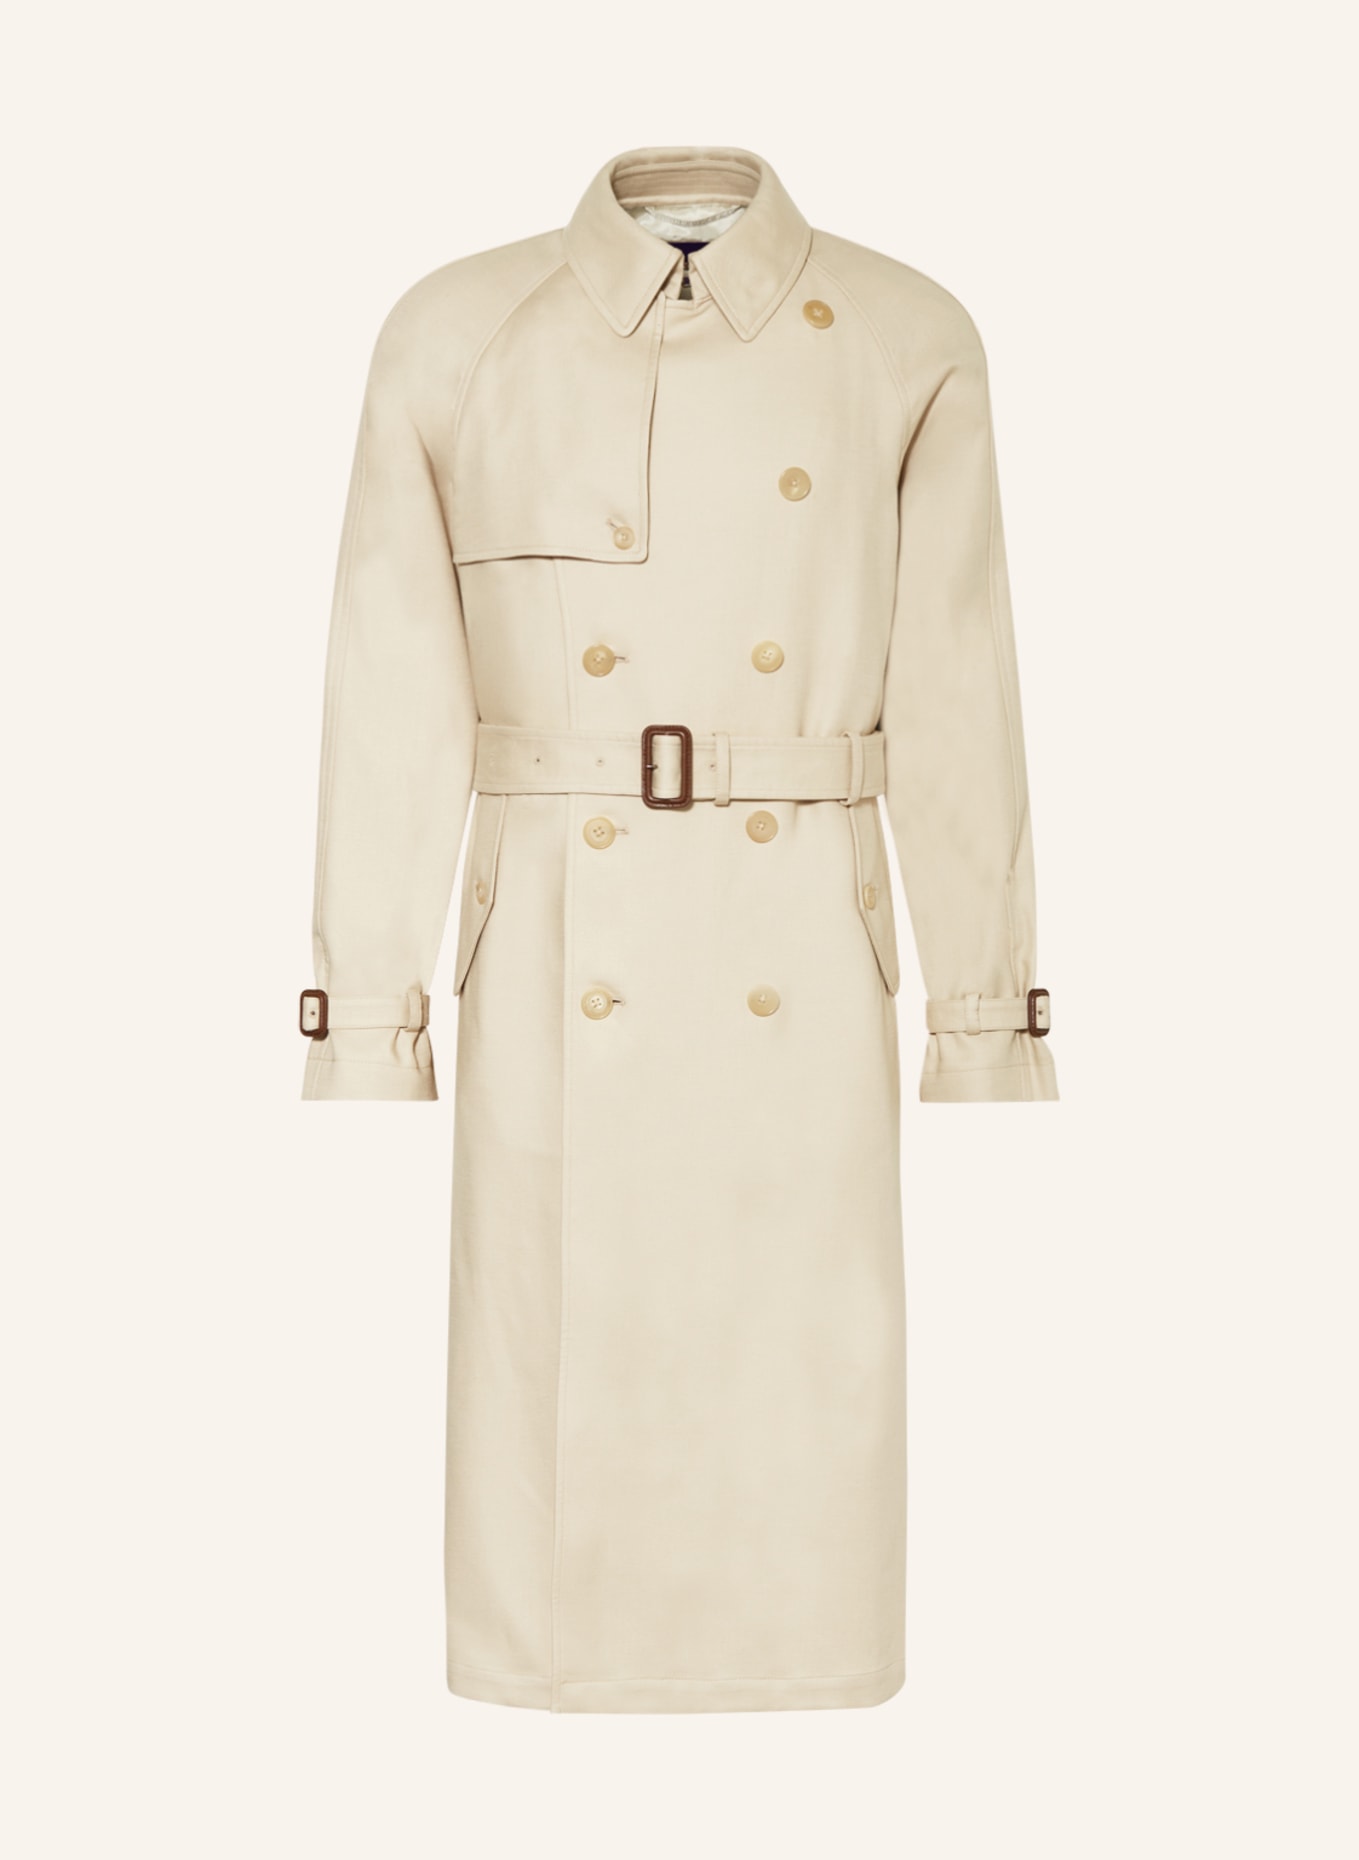 RALPH LAUREN PURPLE LABEL Trench coat, Color: BEIGE (Image 1)